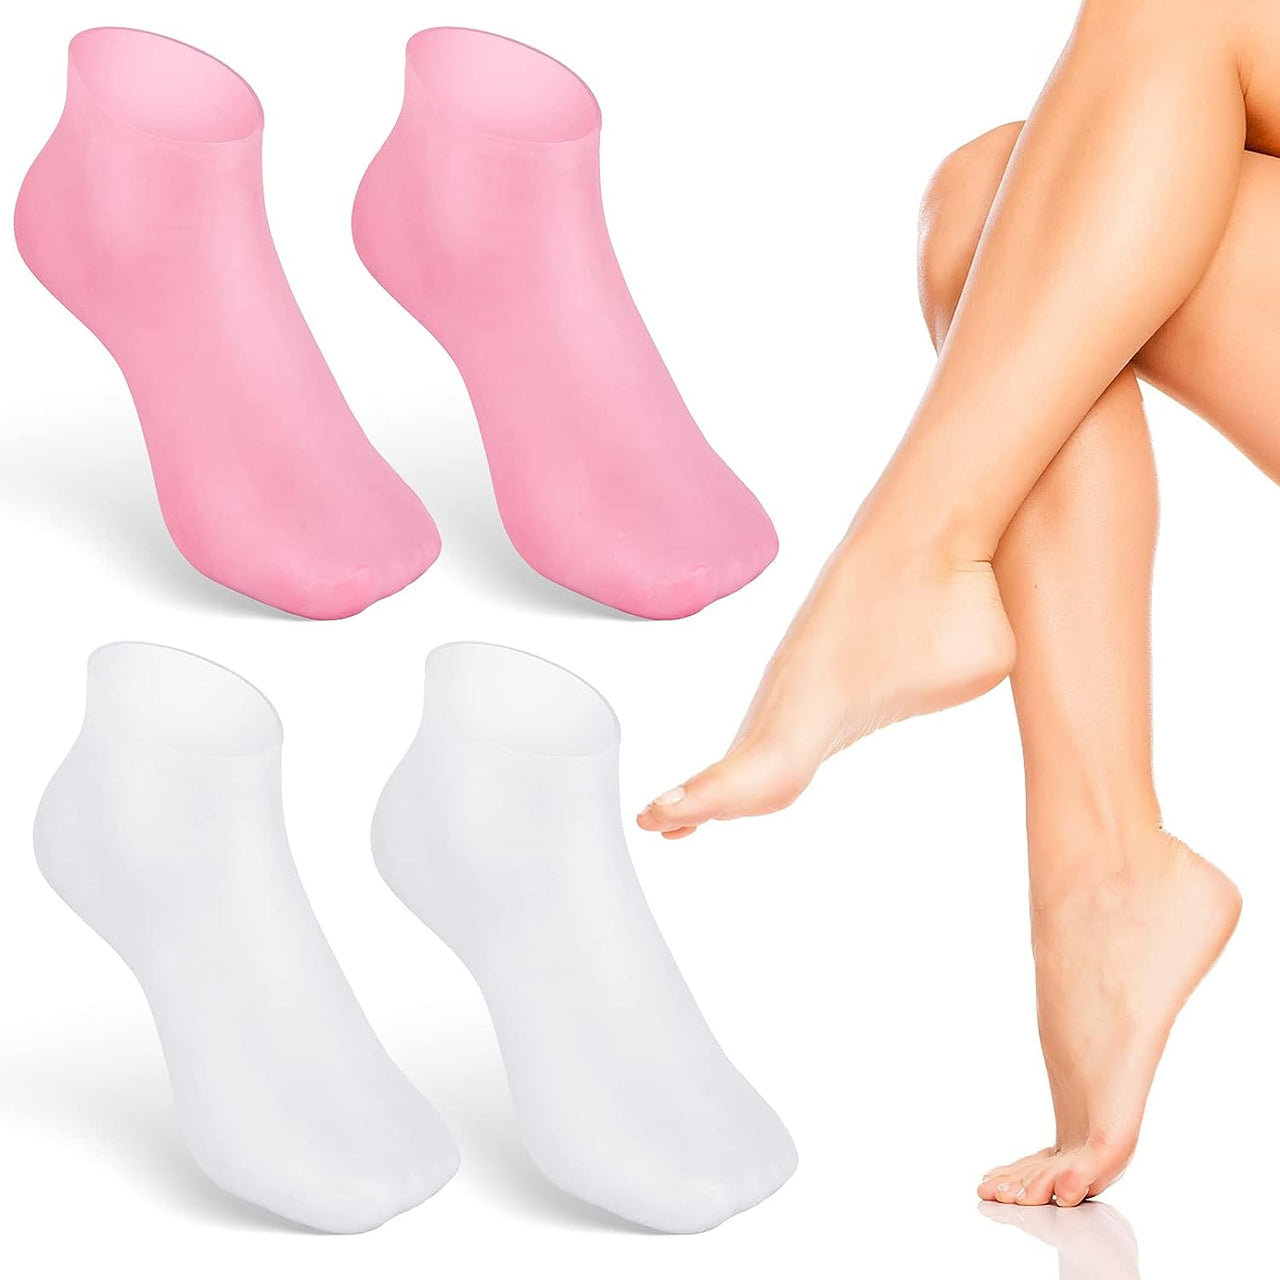 Silicone Moisturizing Socks